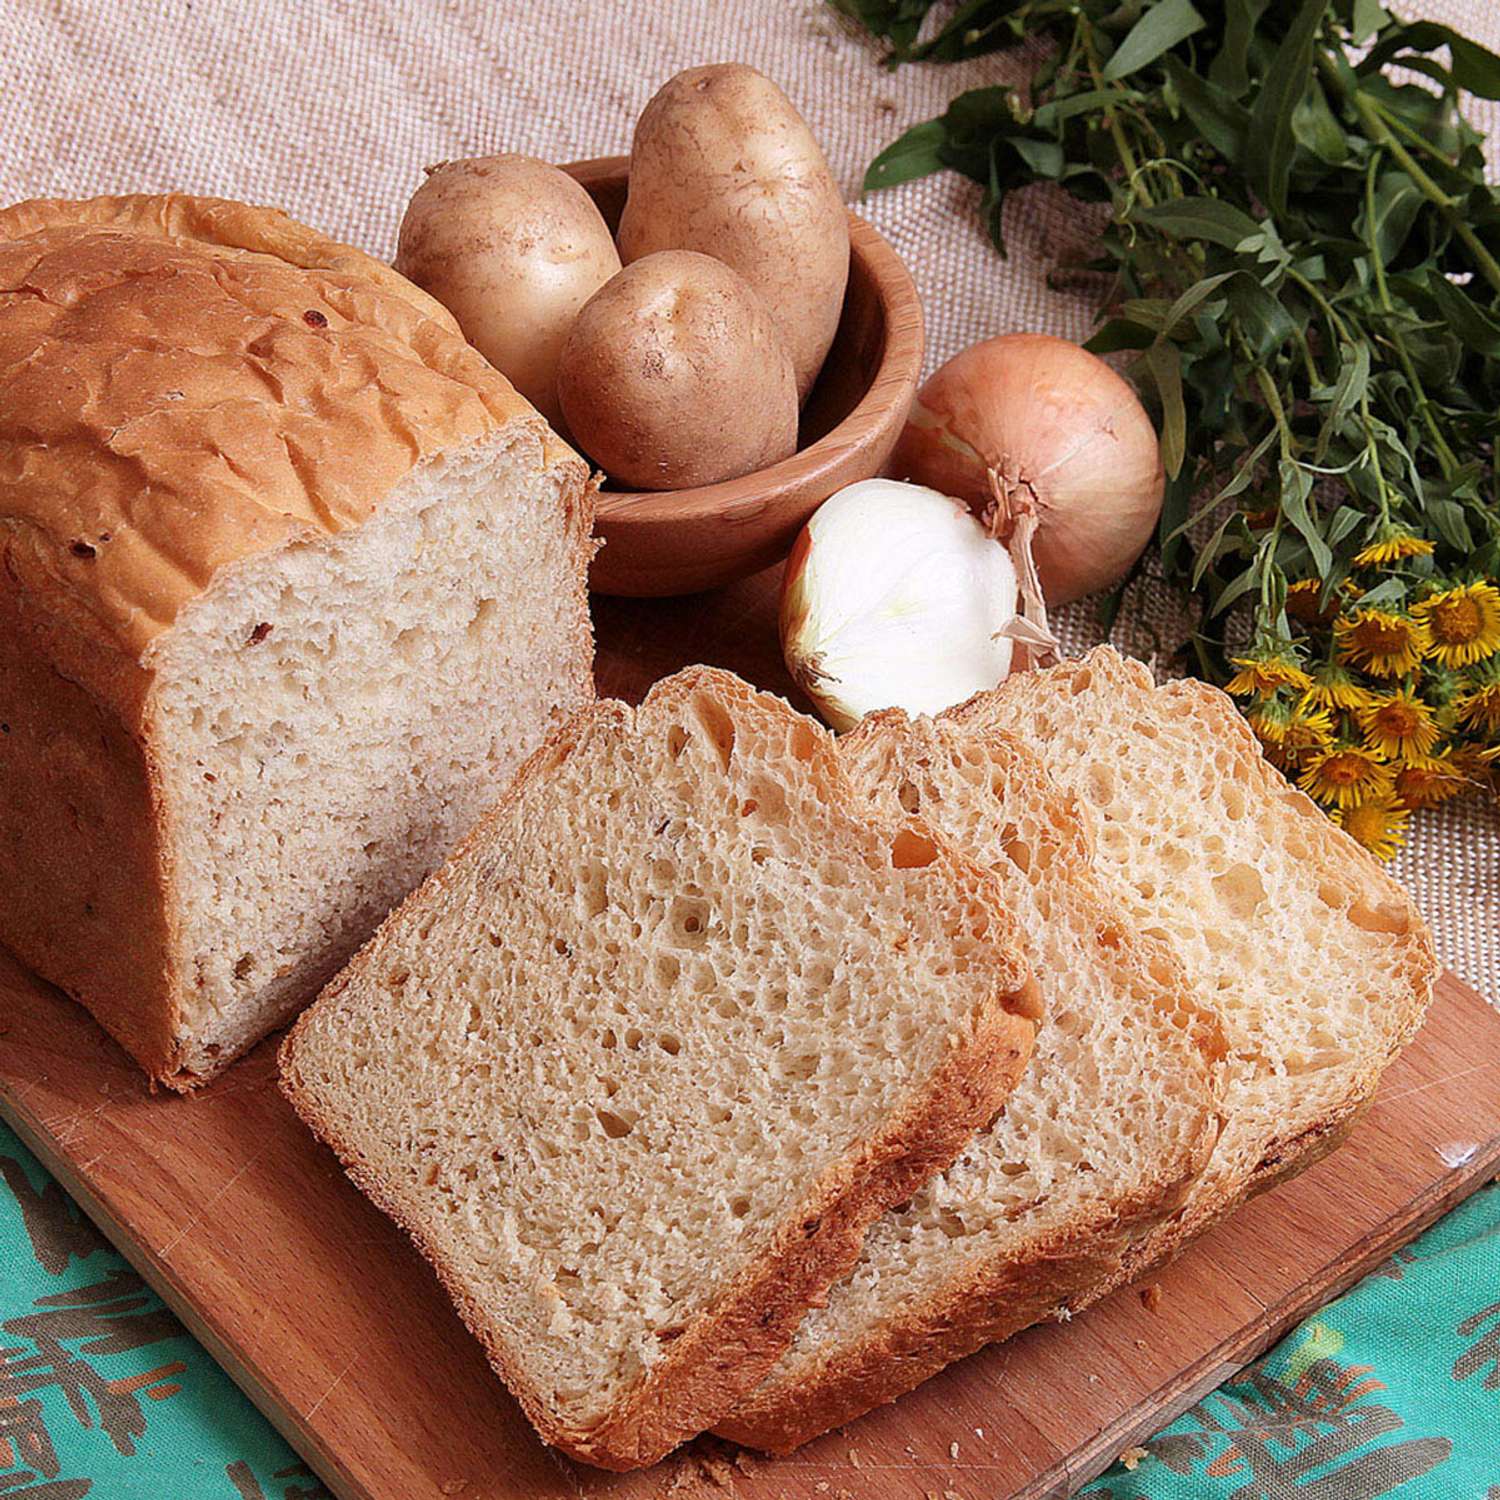 Картофельный хлеб С. Пудовъ Из Германии с жареным луком 500 г - фото 2